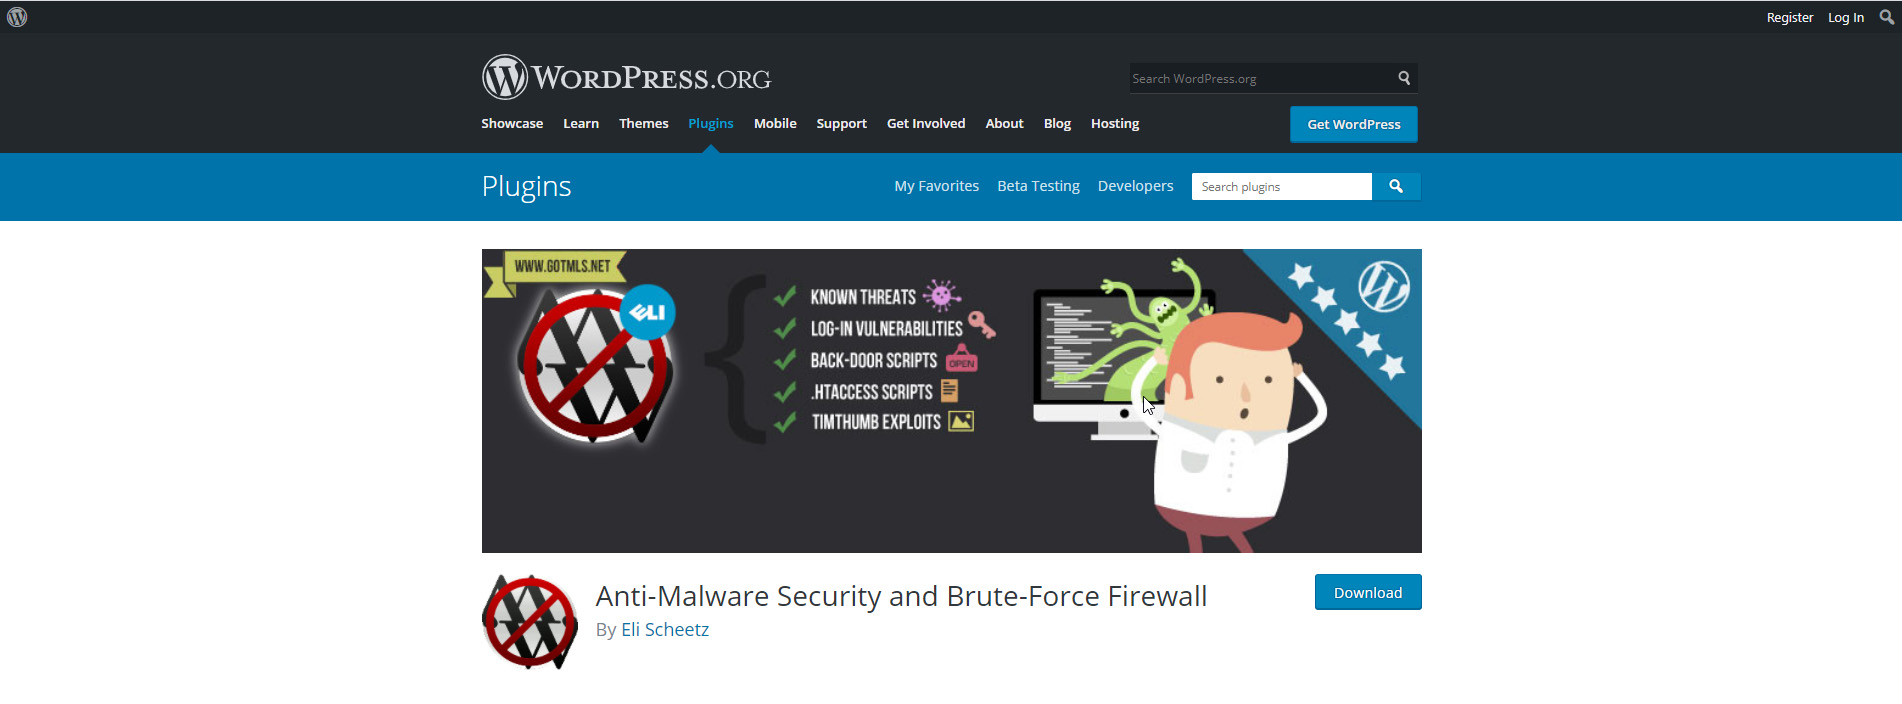  Anti-Malware Security